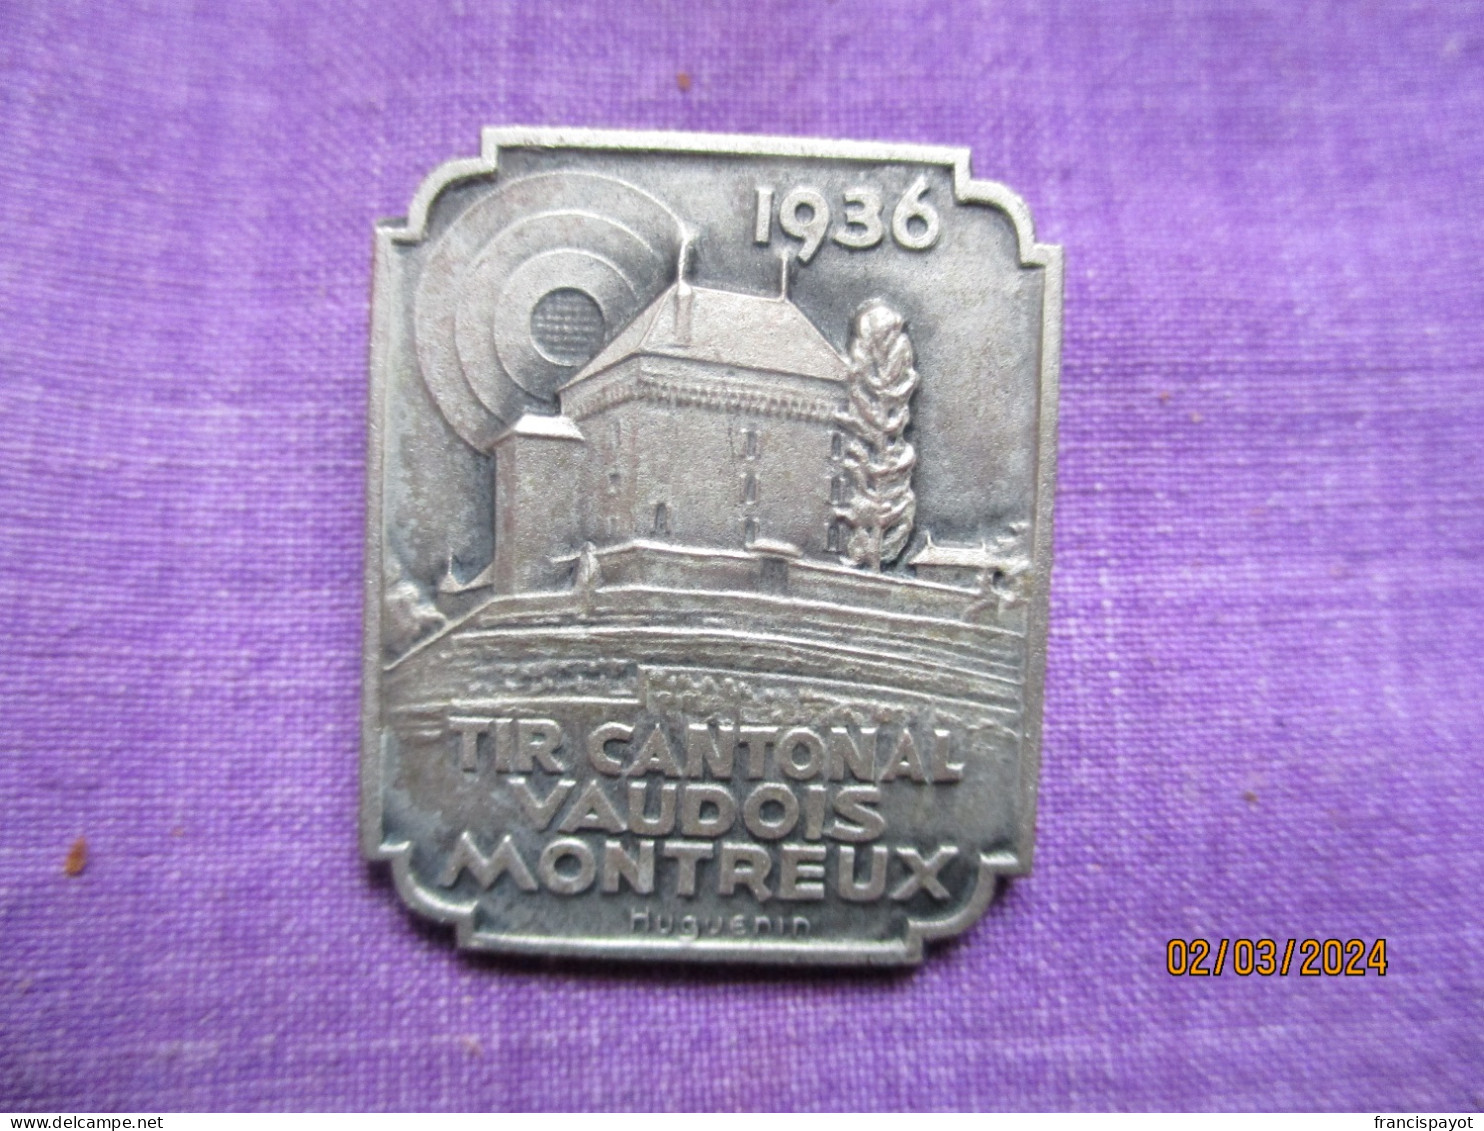 Suisse: épinglette Tir Cantonal Vaudois Montreux 1931 - Profesionales / De Sociedad